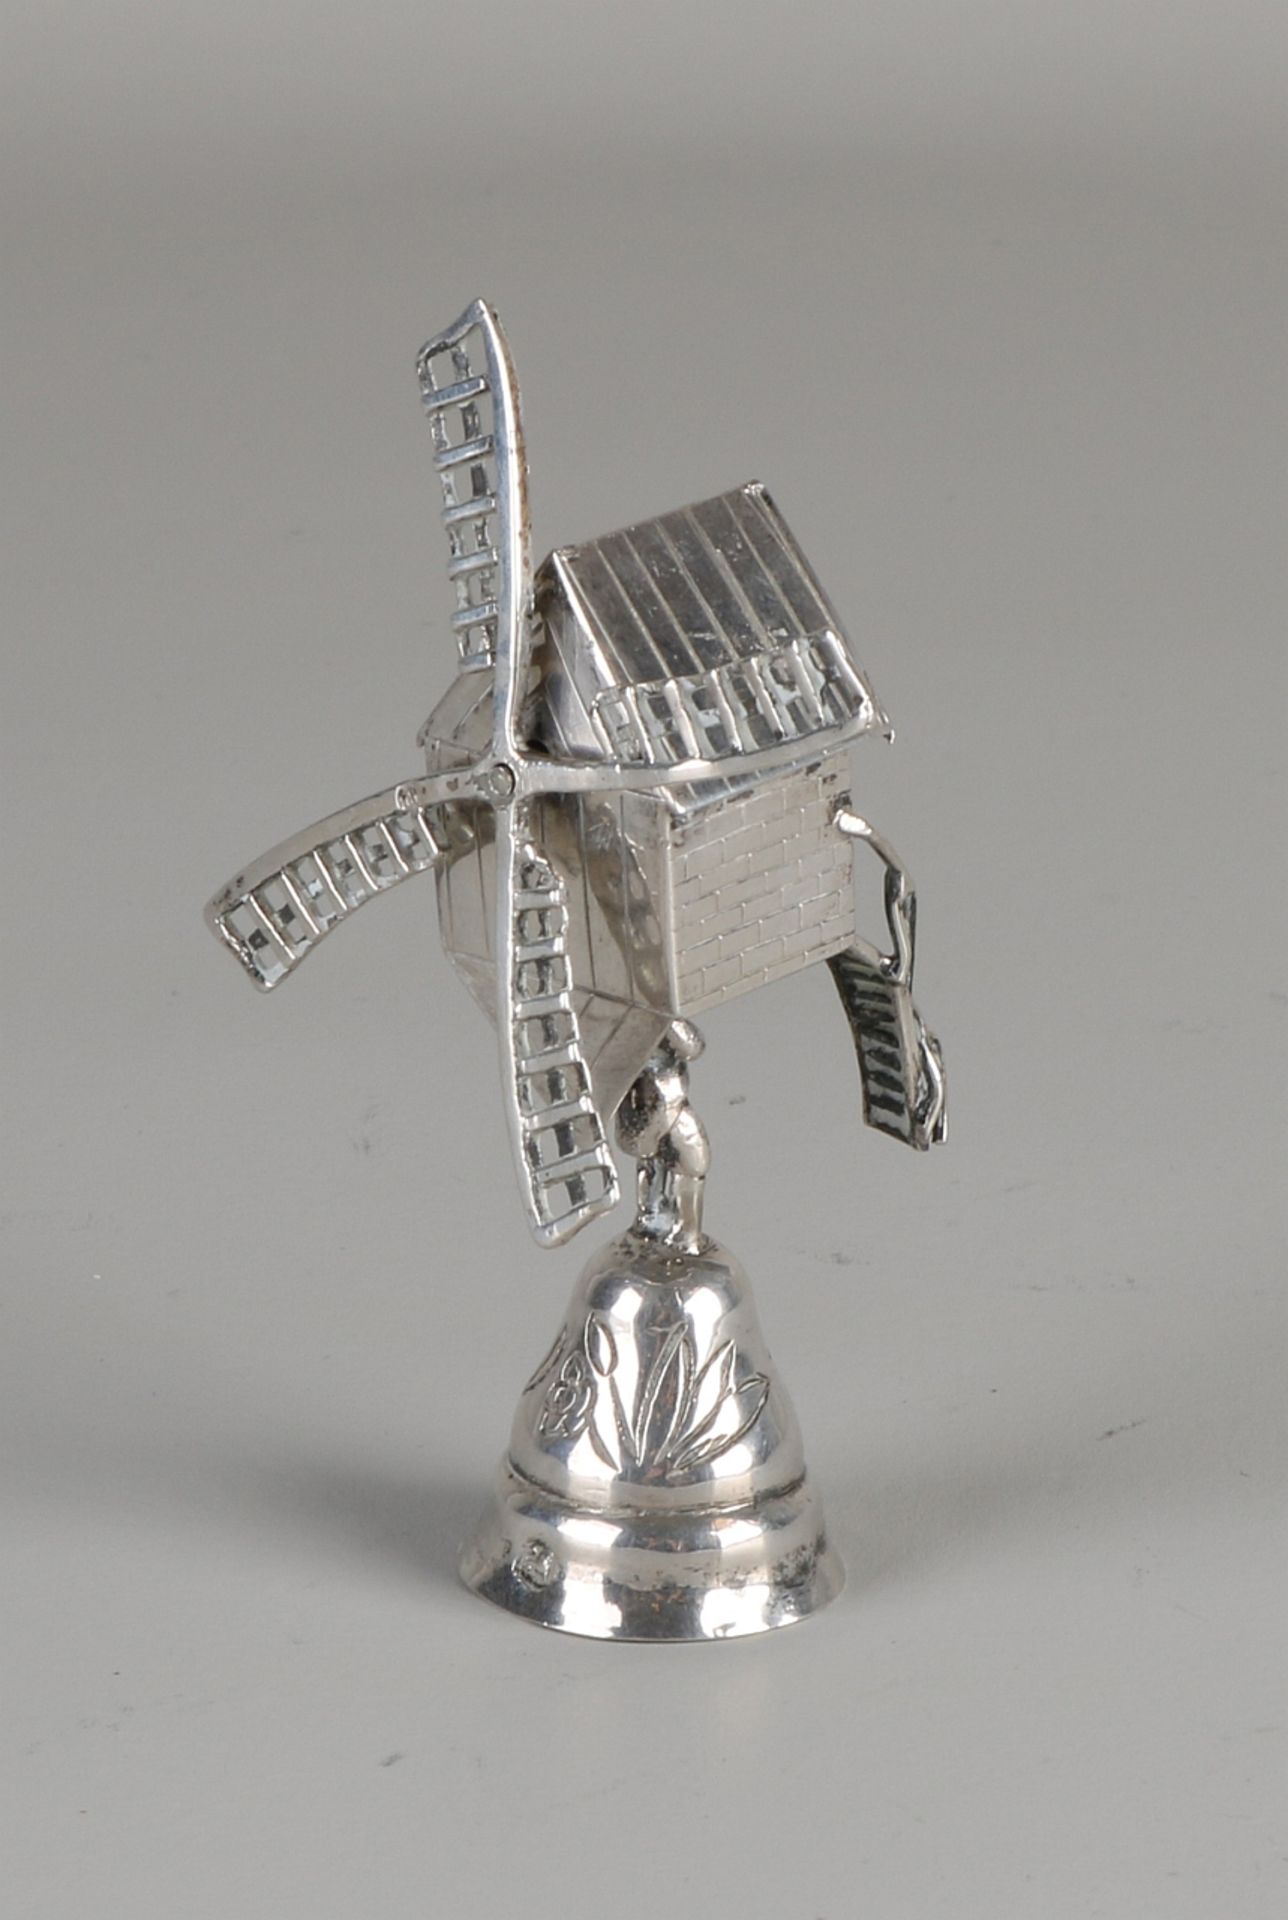 Silber Miniatur Windmühle Tasse, 835/000, yl.:W:1906 ca 28 Gramm 9x6cm. In guter KonditionSilver